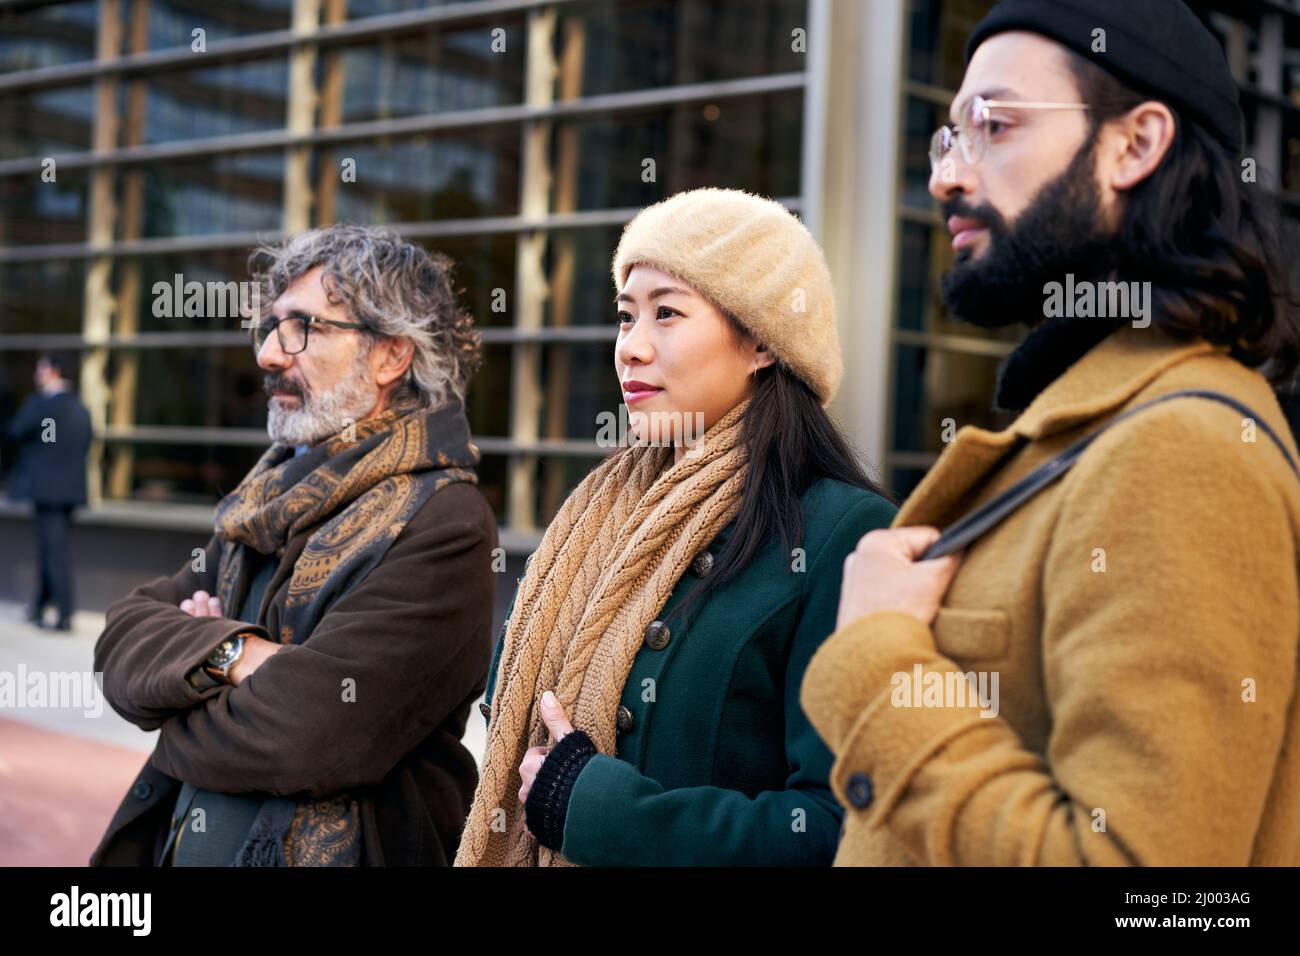 Un groupe multiethnique de trois personnes d'âges différents dans un centre d'affaires posant pour une photo. Banque D'Images